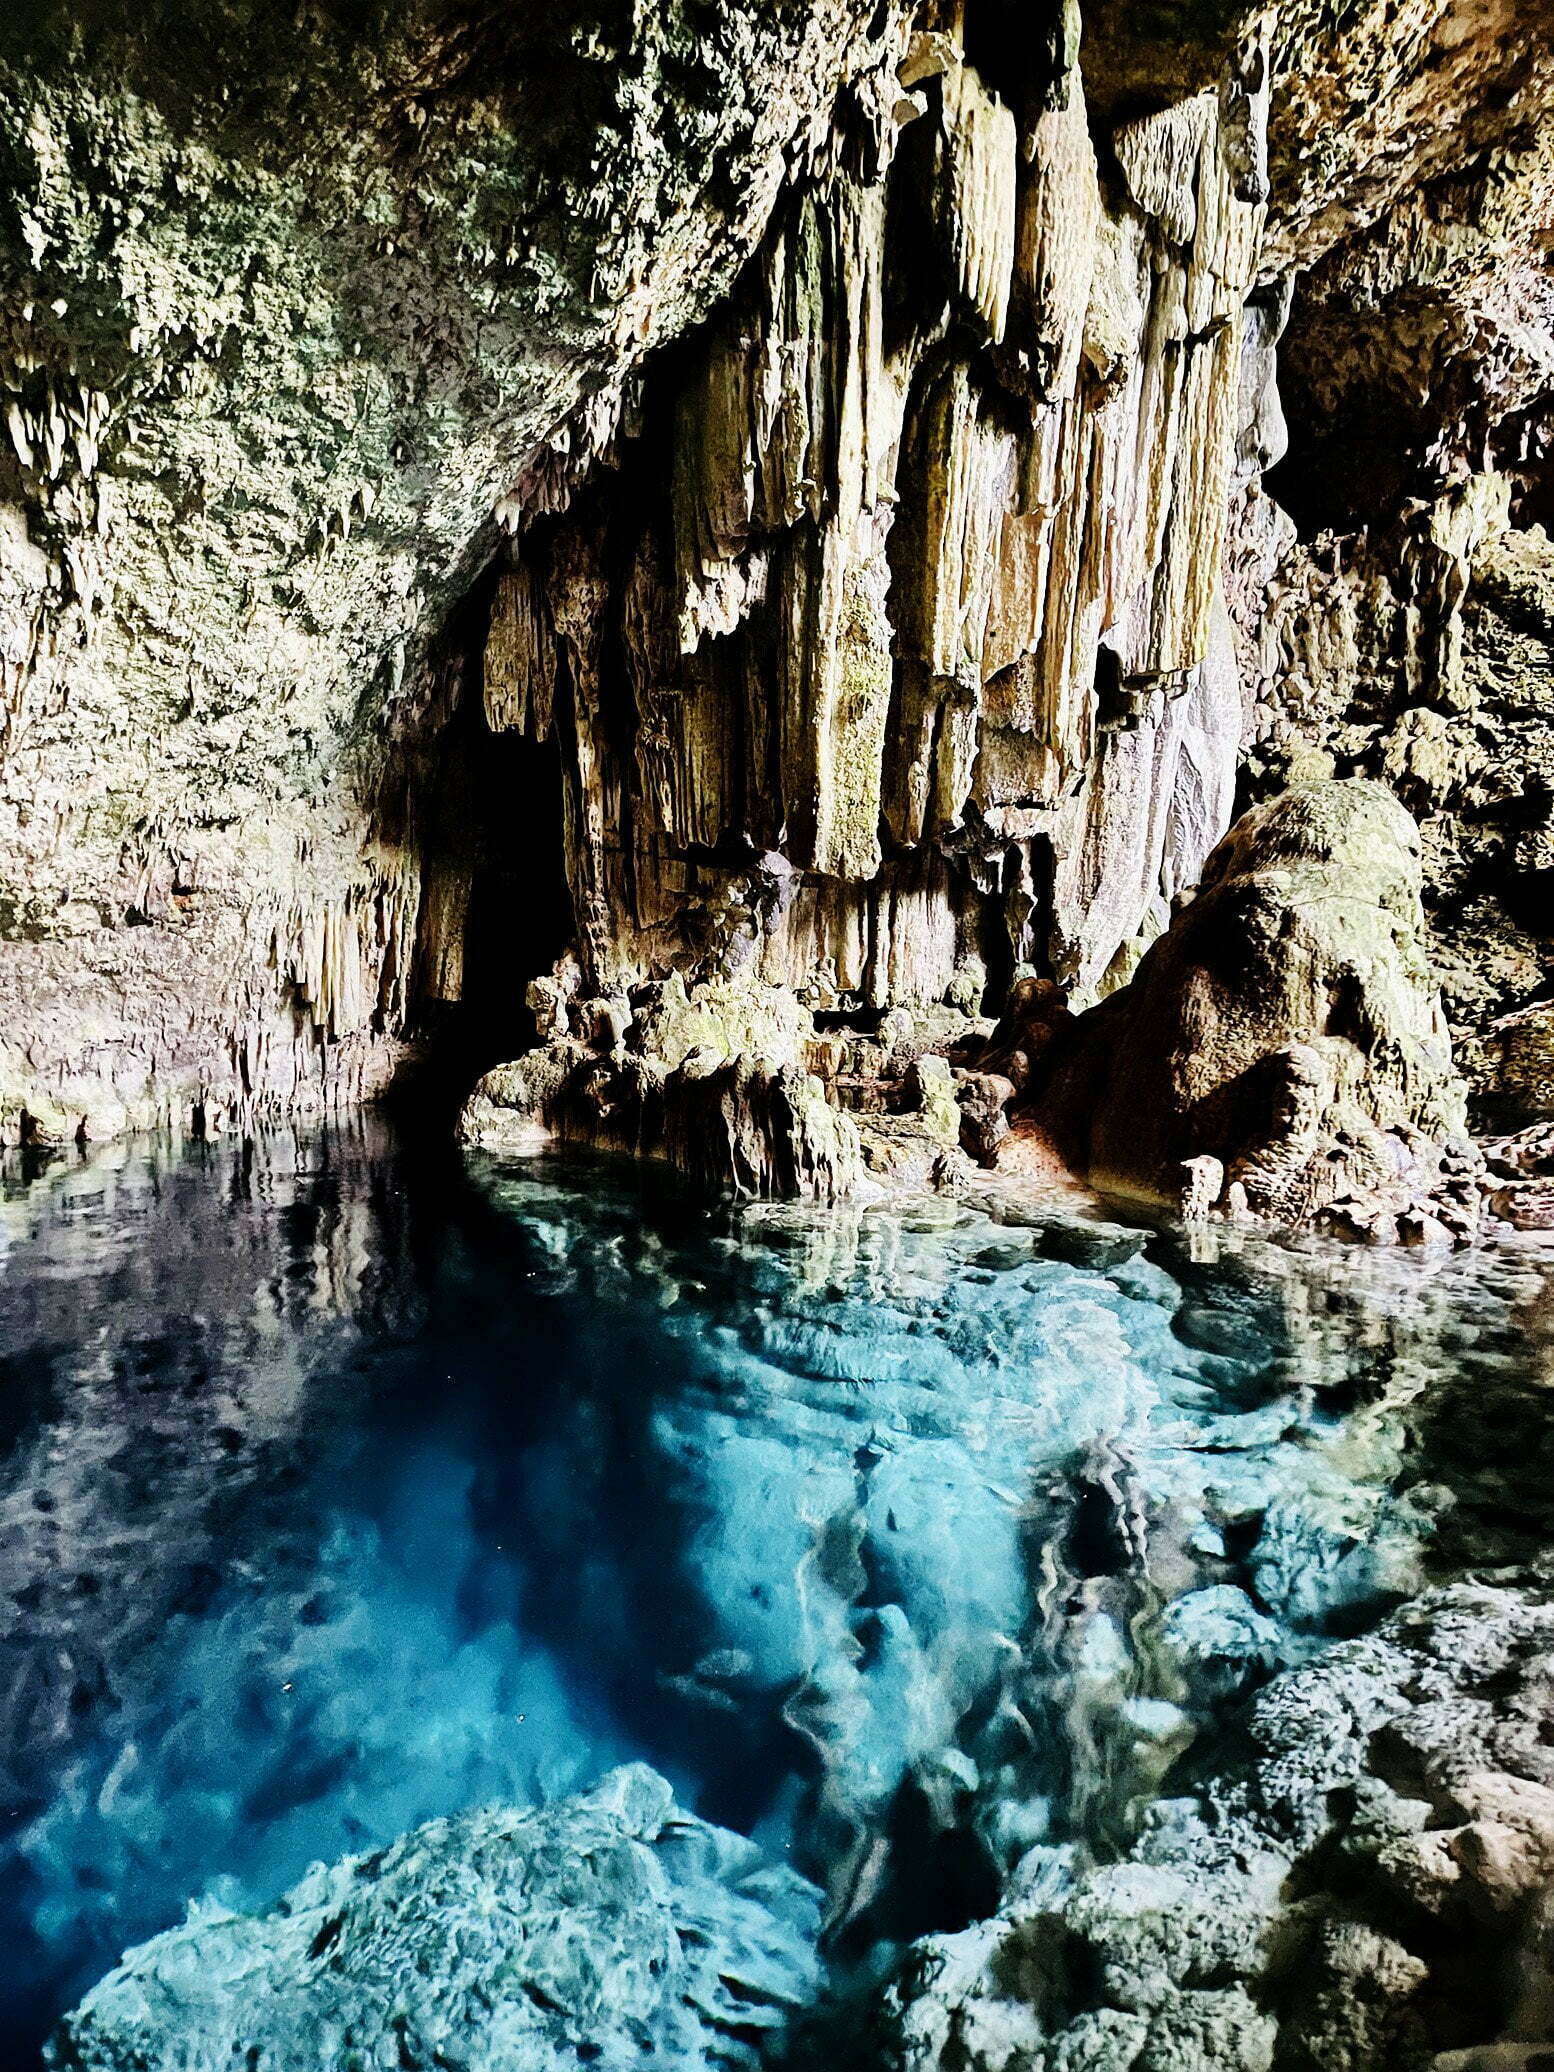 Cueva de Saturno in Varadero